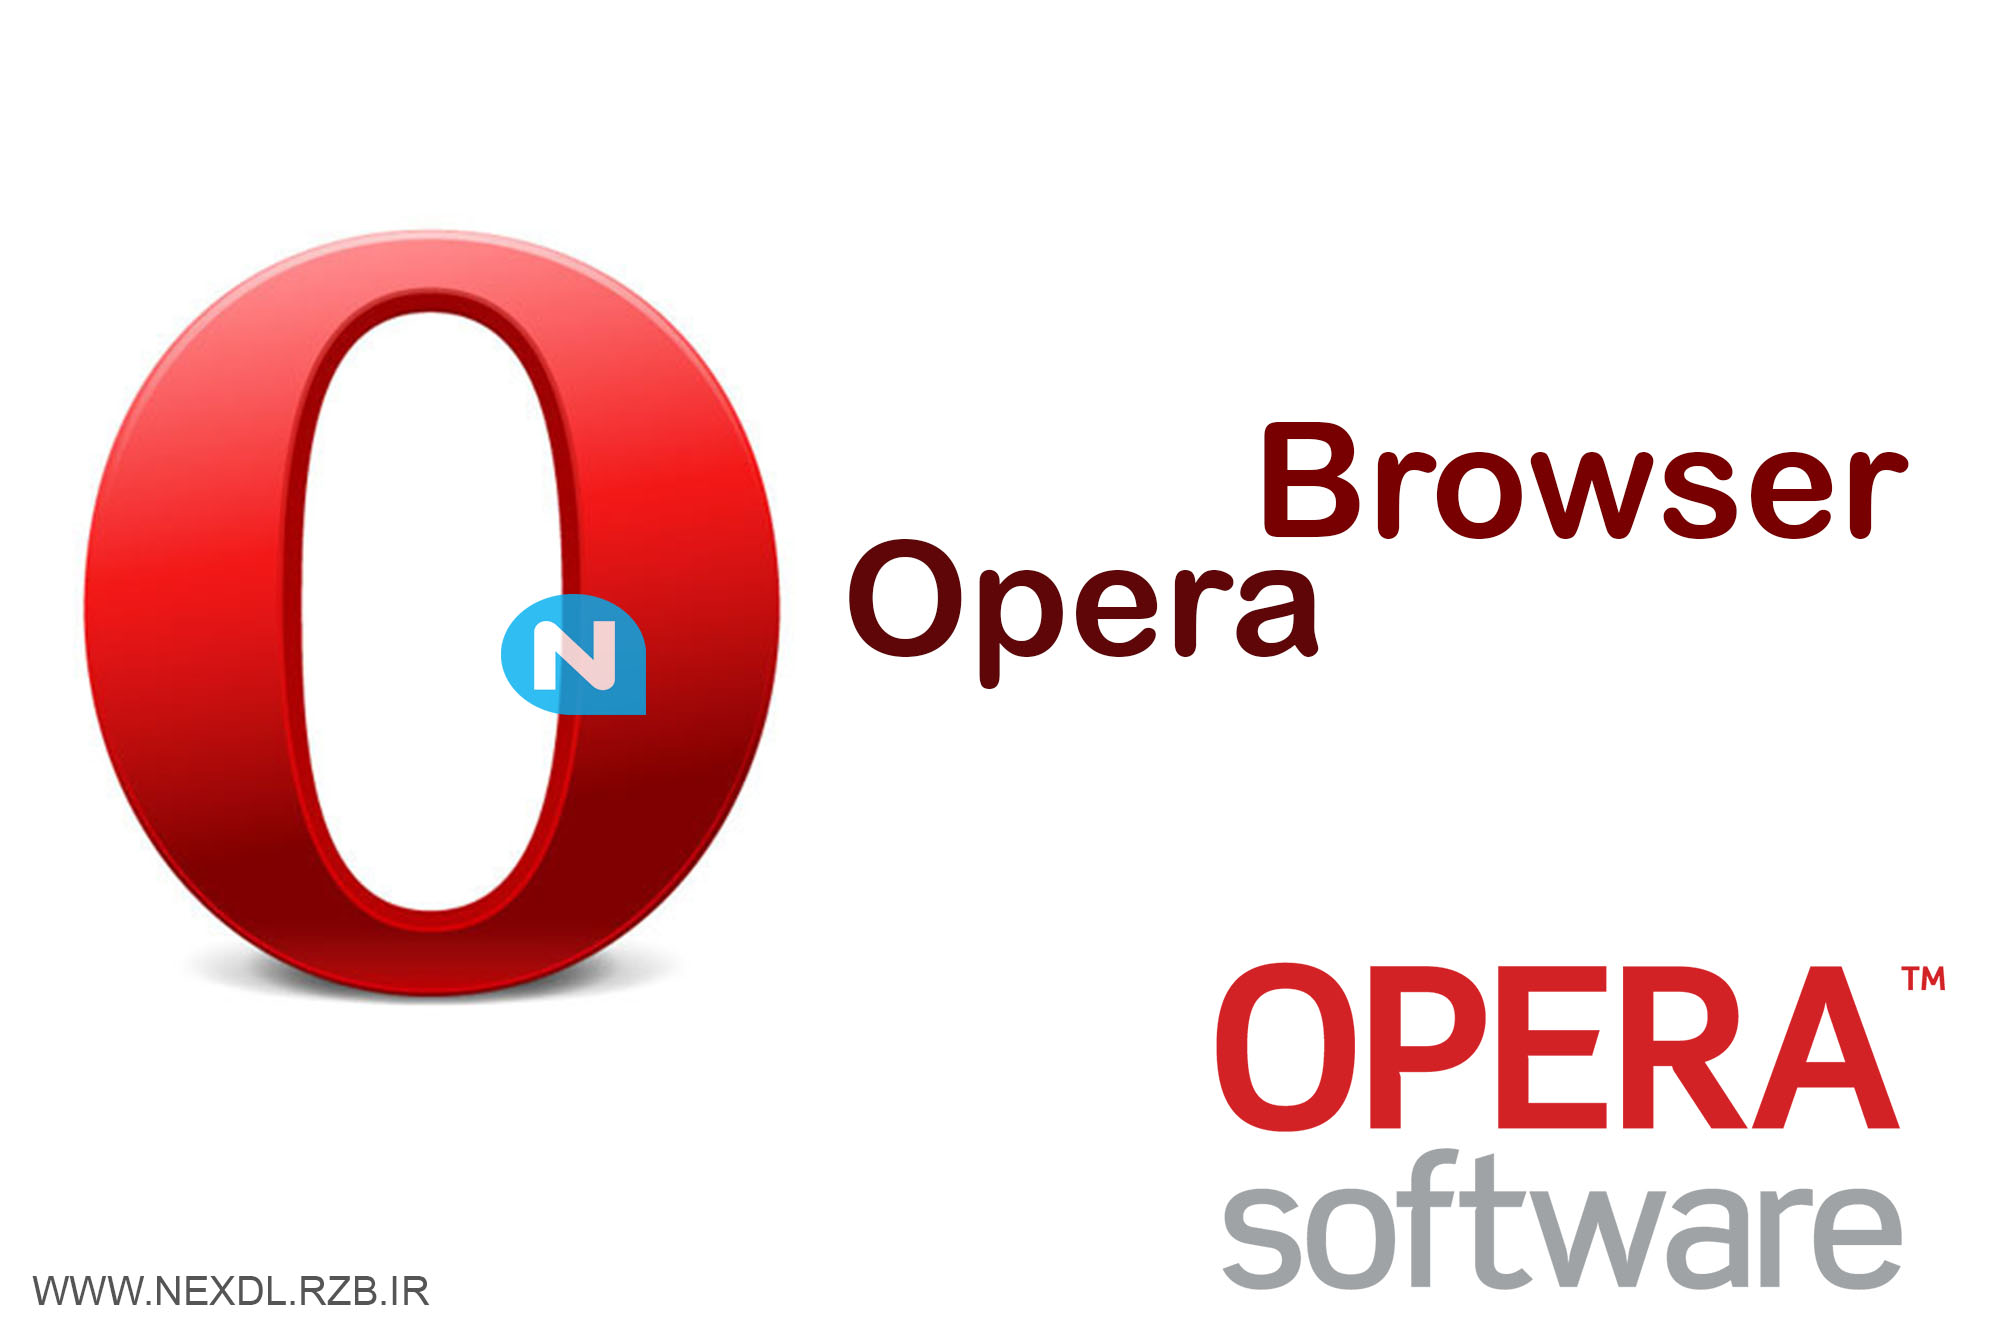 دانلود Opera 28.0 Build 1750.40 - مرورگر اینترنت Opera